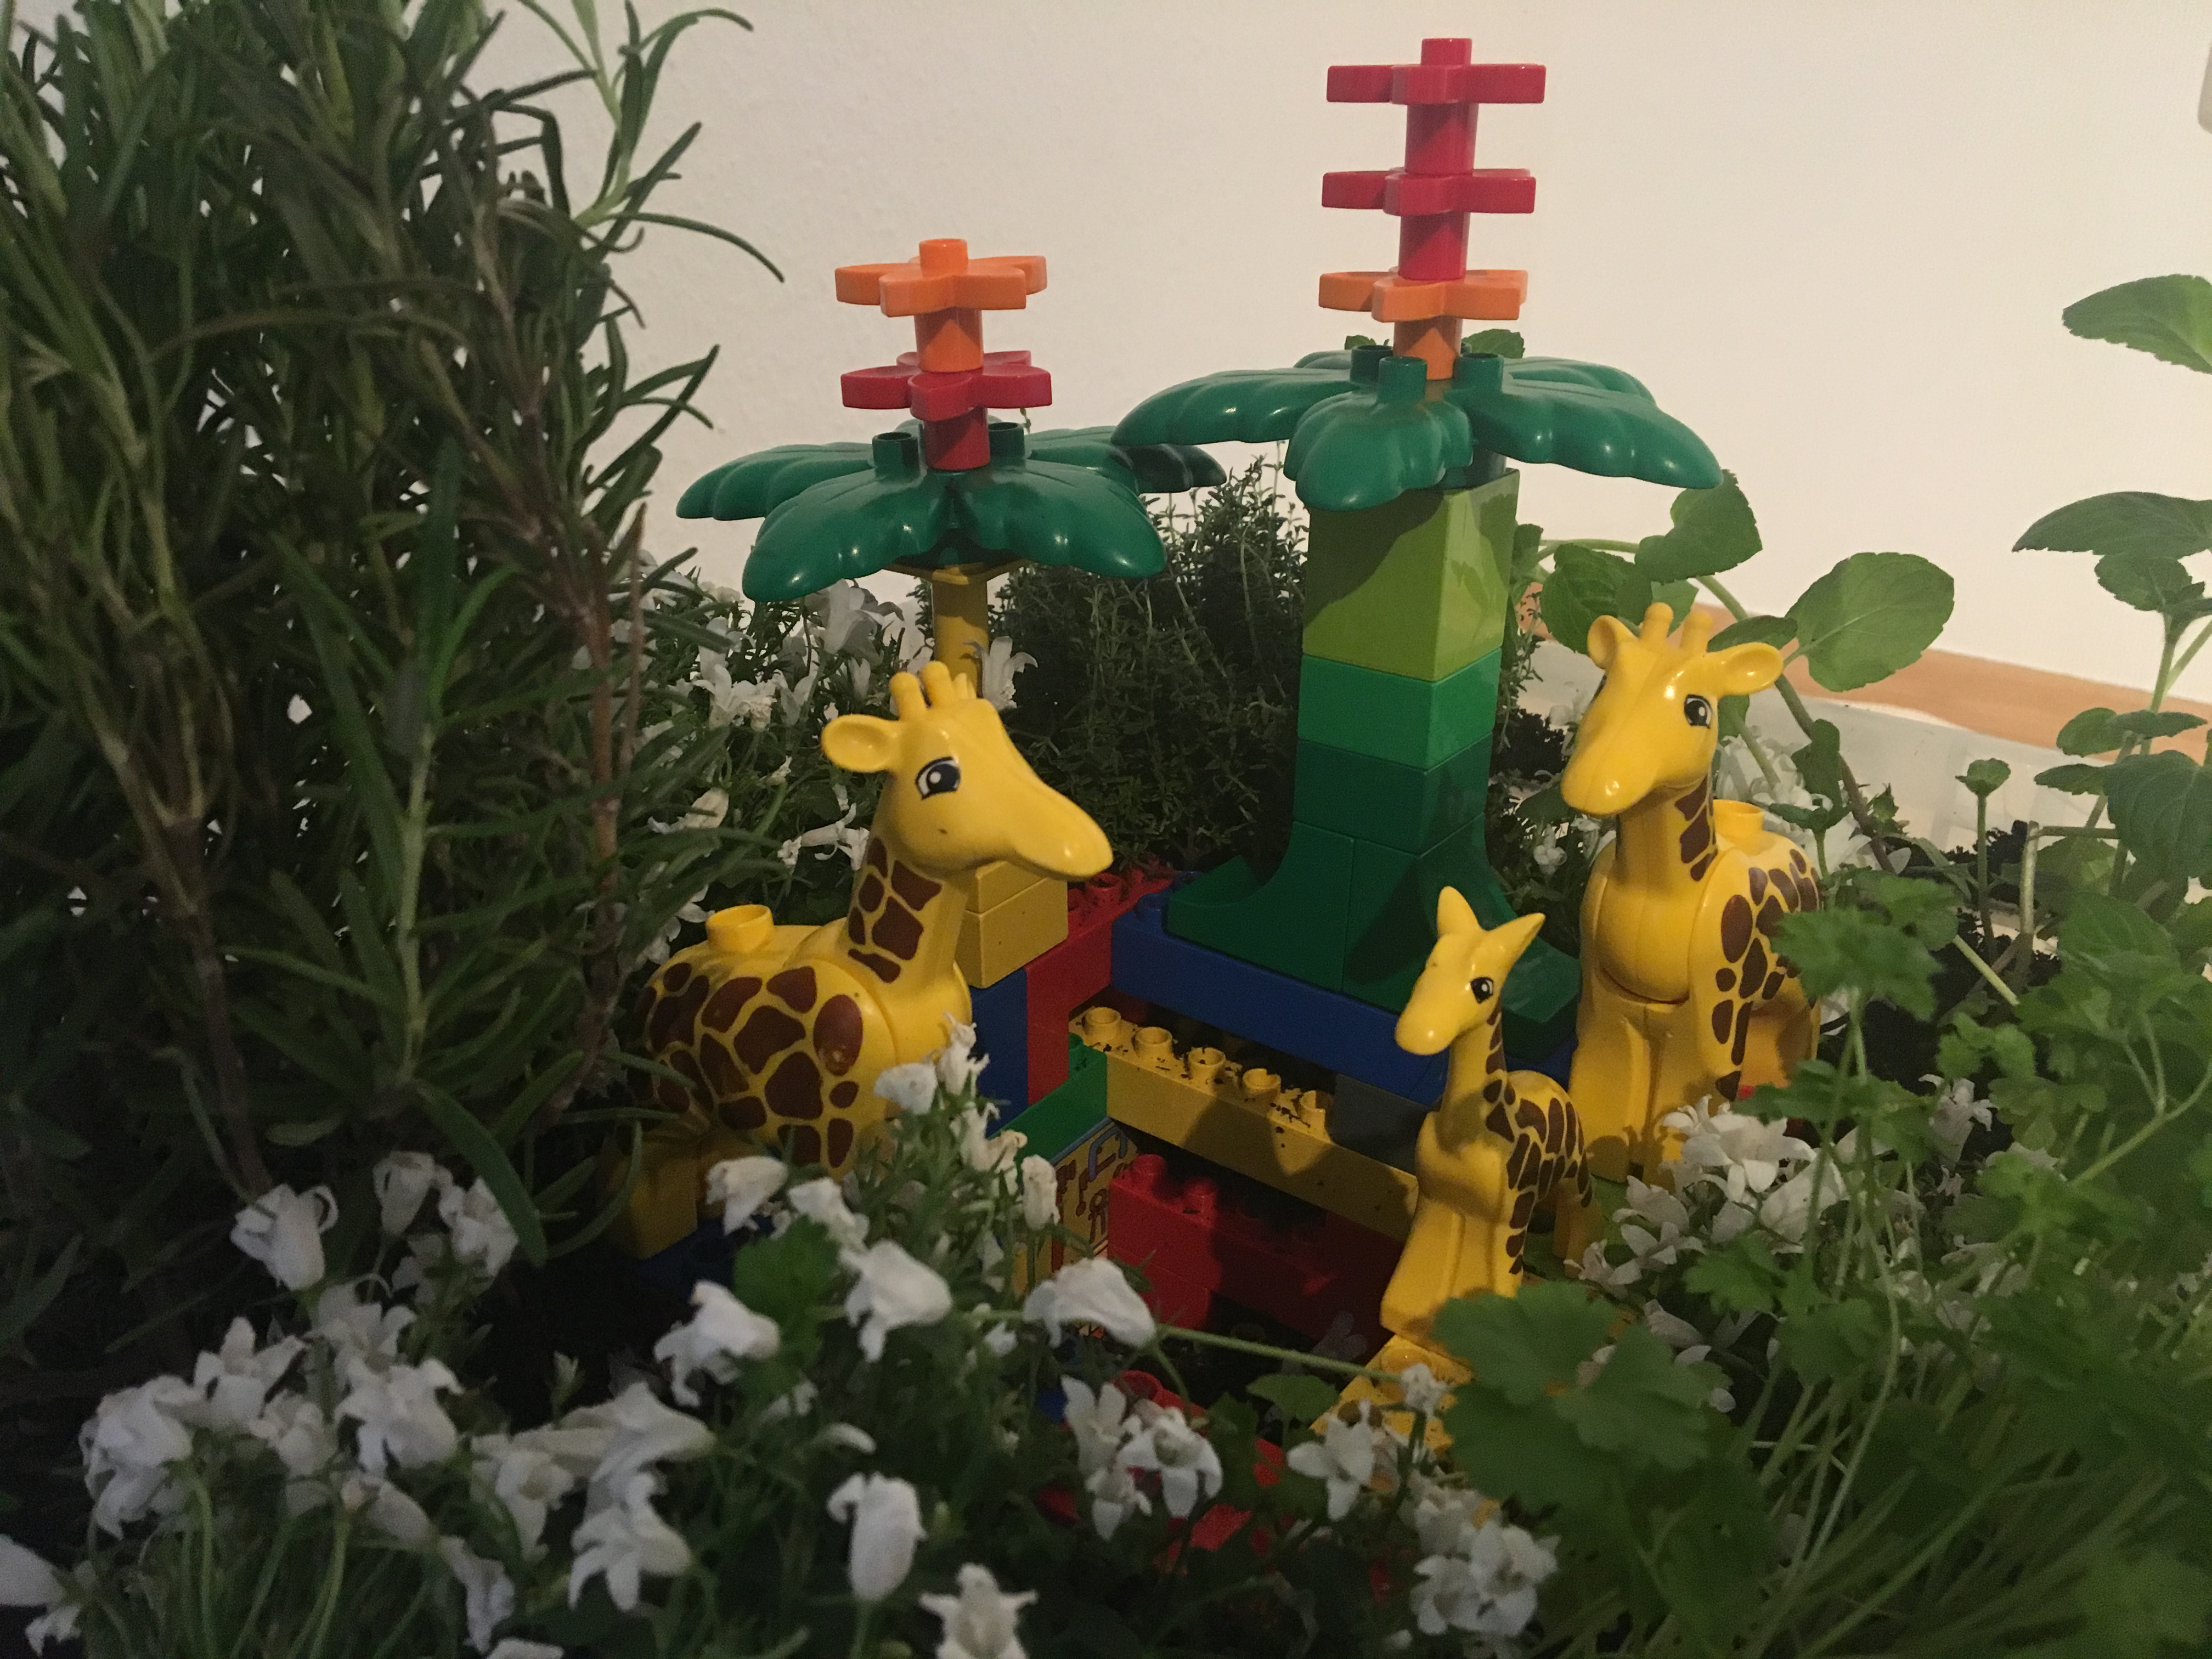 Lego-Tier-Varianten der Sprachspinat Wupf-Wurm-Pflanzen-Kiste mit gebrauchten Legosteinen und Tierfiguren